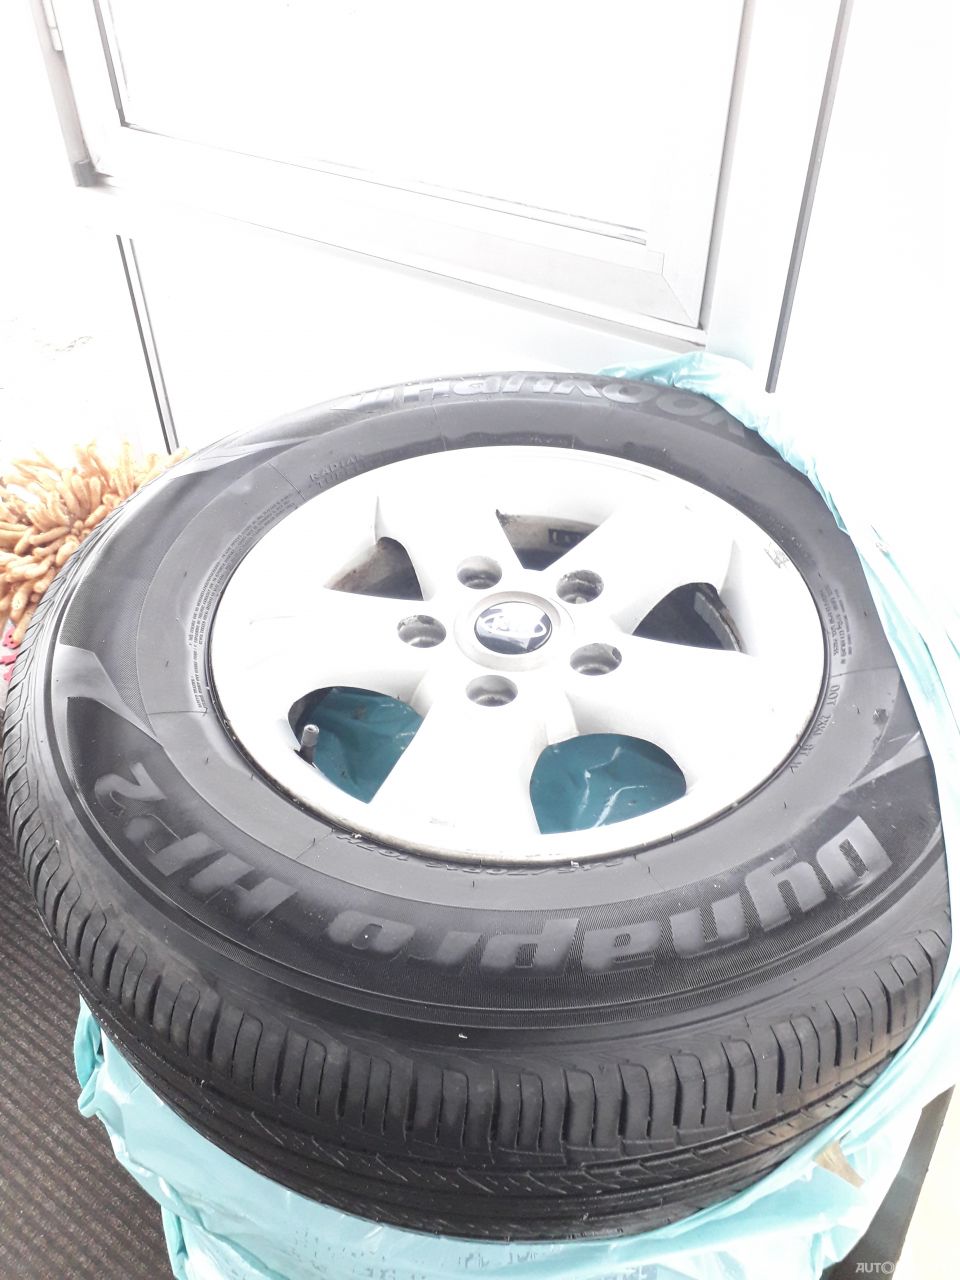 Hankook Radial Tubeless M+s summer tyres | 8